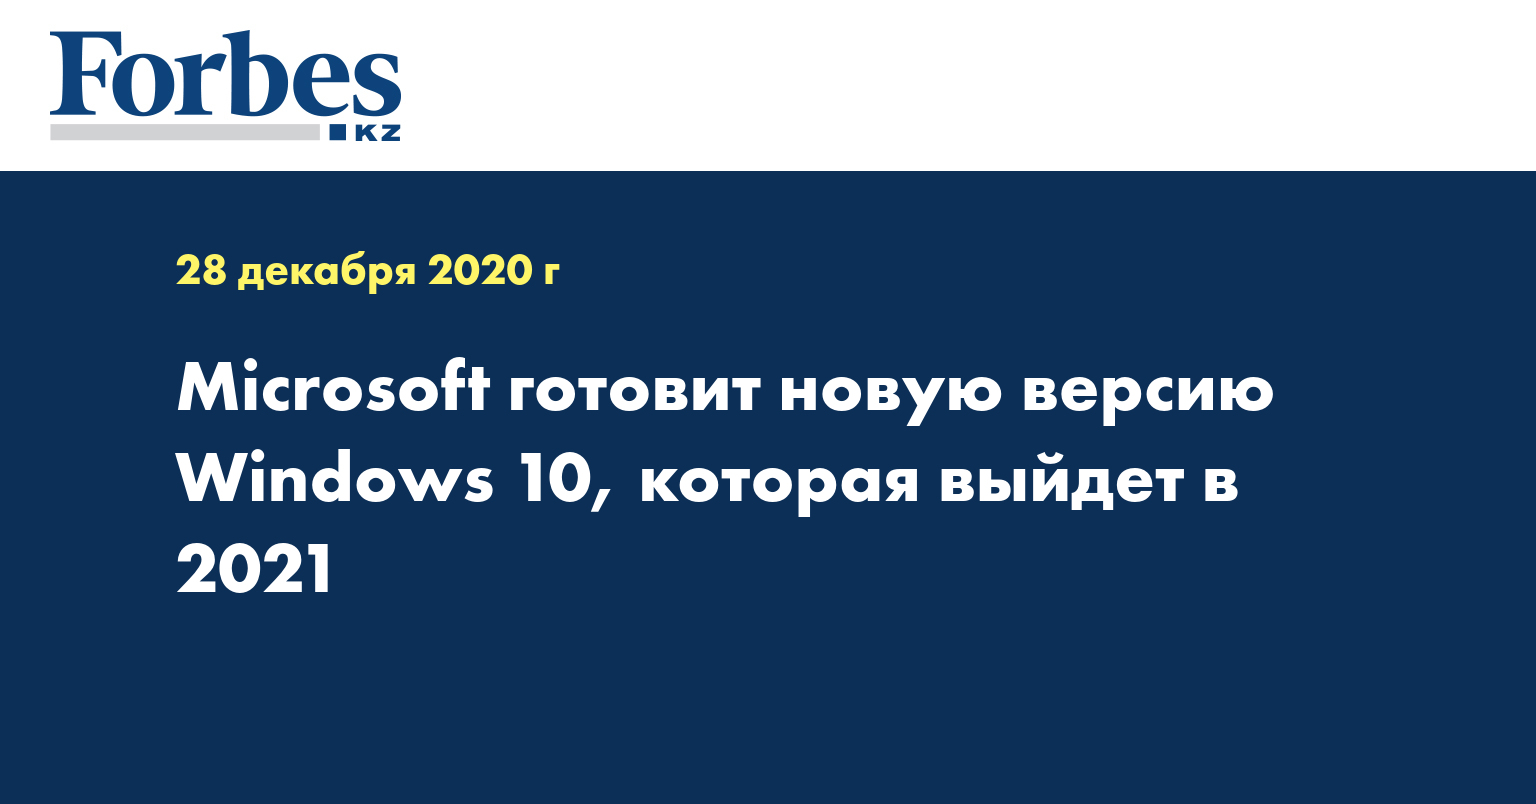 Microsoft готовит новую версию Windows 10, которая выйдет в 2021 